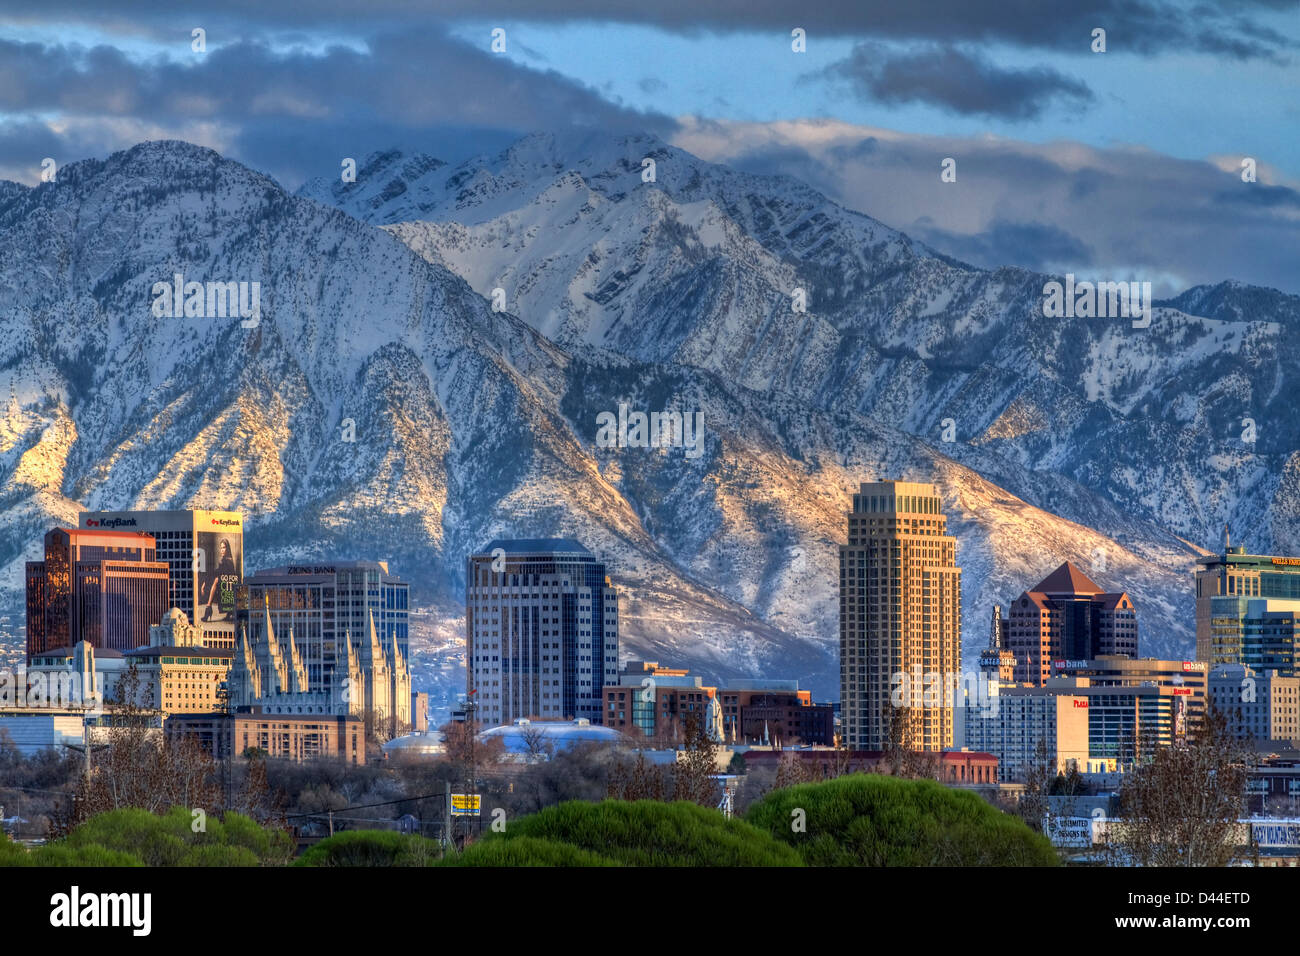 Vue panoramique sur le centre-ville de Salt Lake City skyline au début du printemps avec des monts enneigés des montagnes Wasatch dans l'arrière-plan Banque D'Images